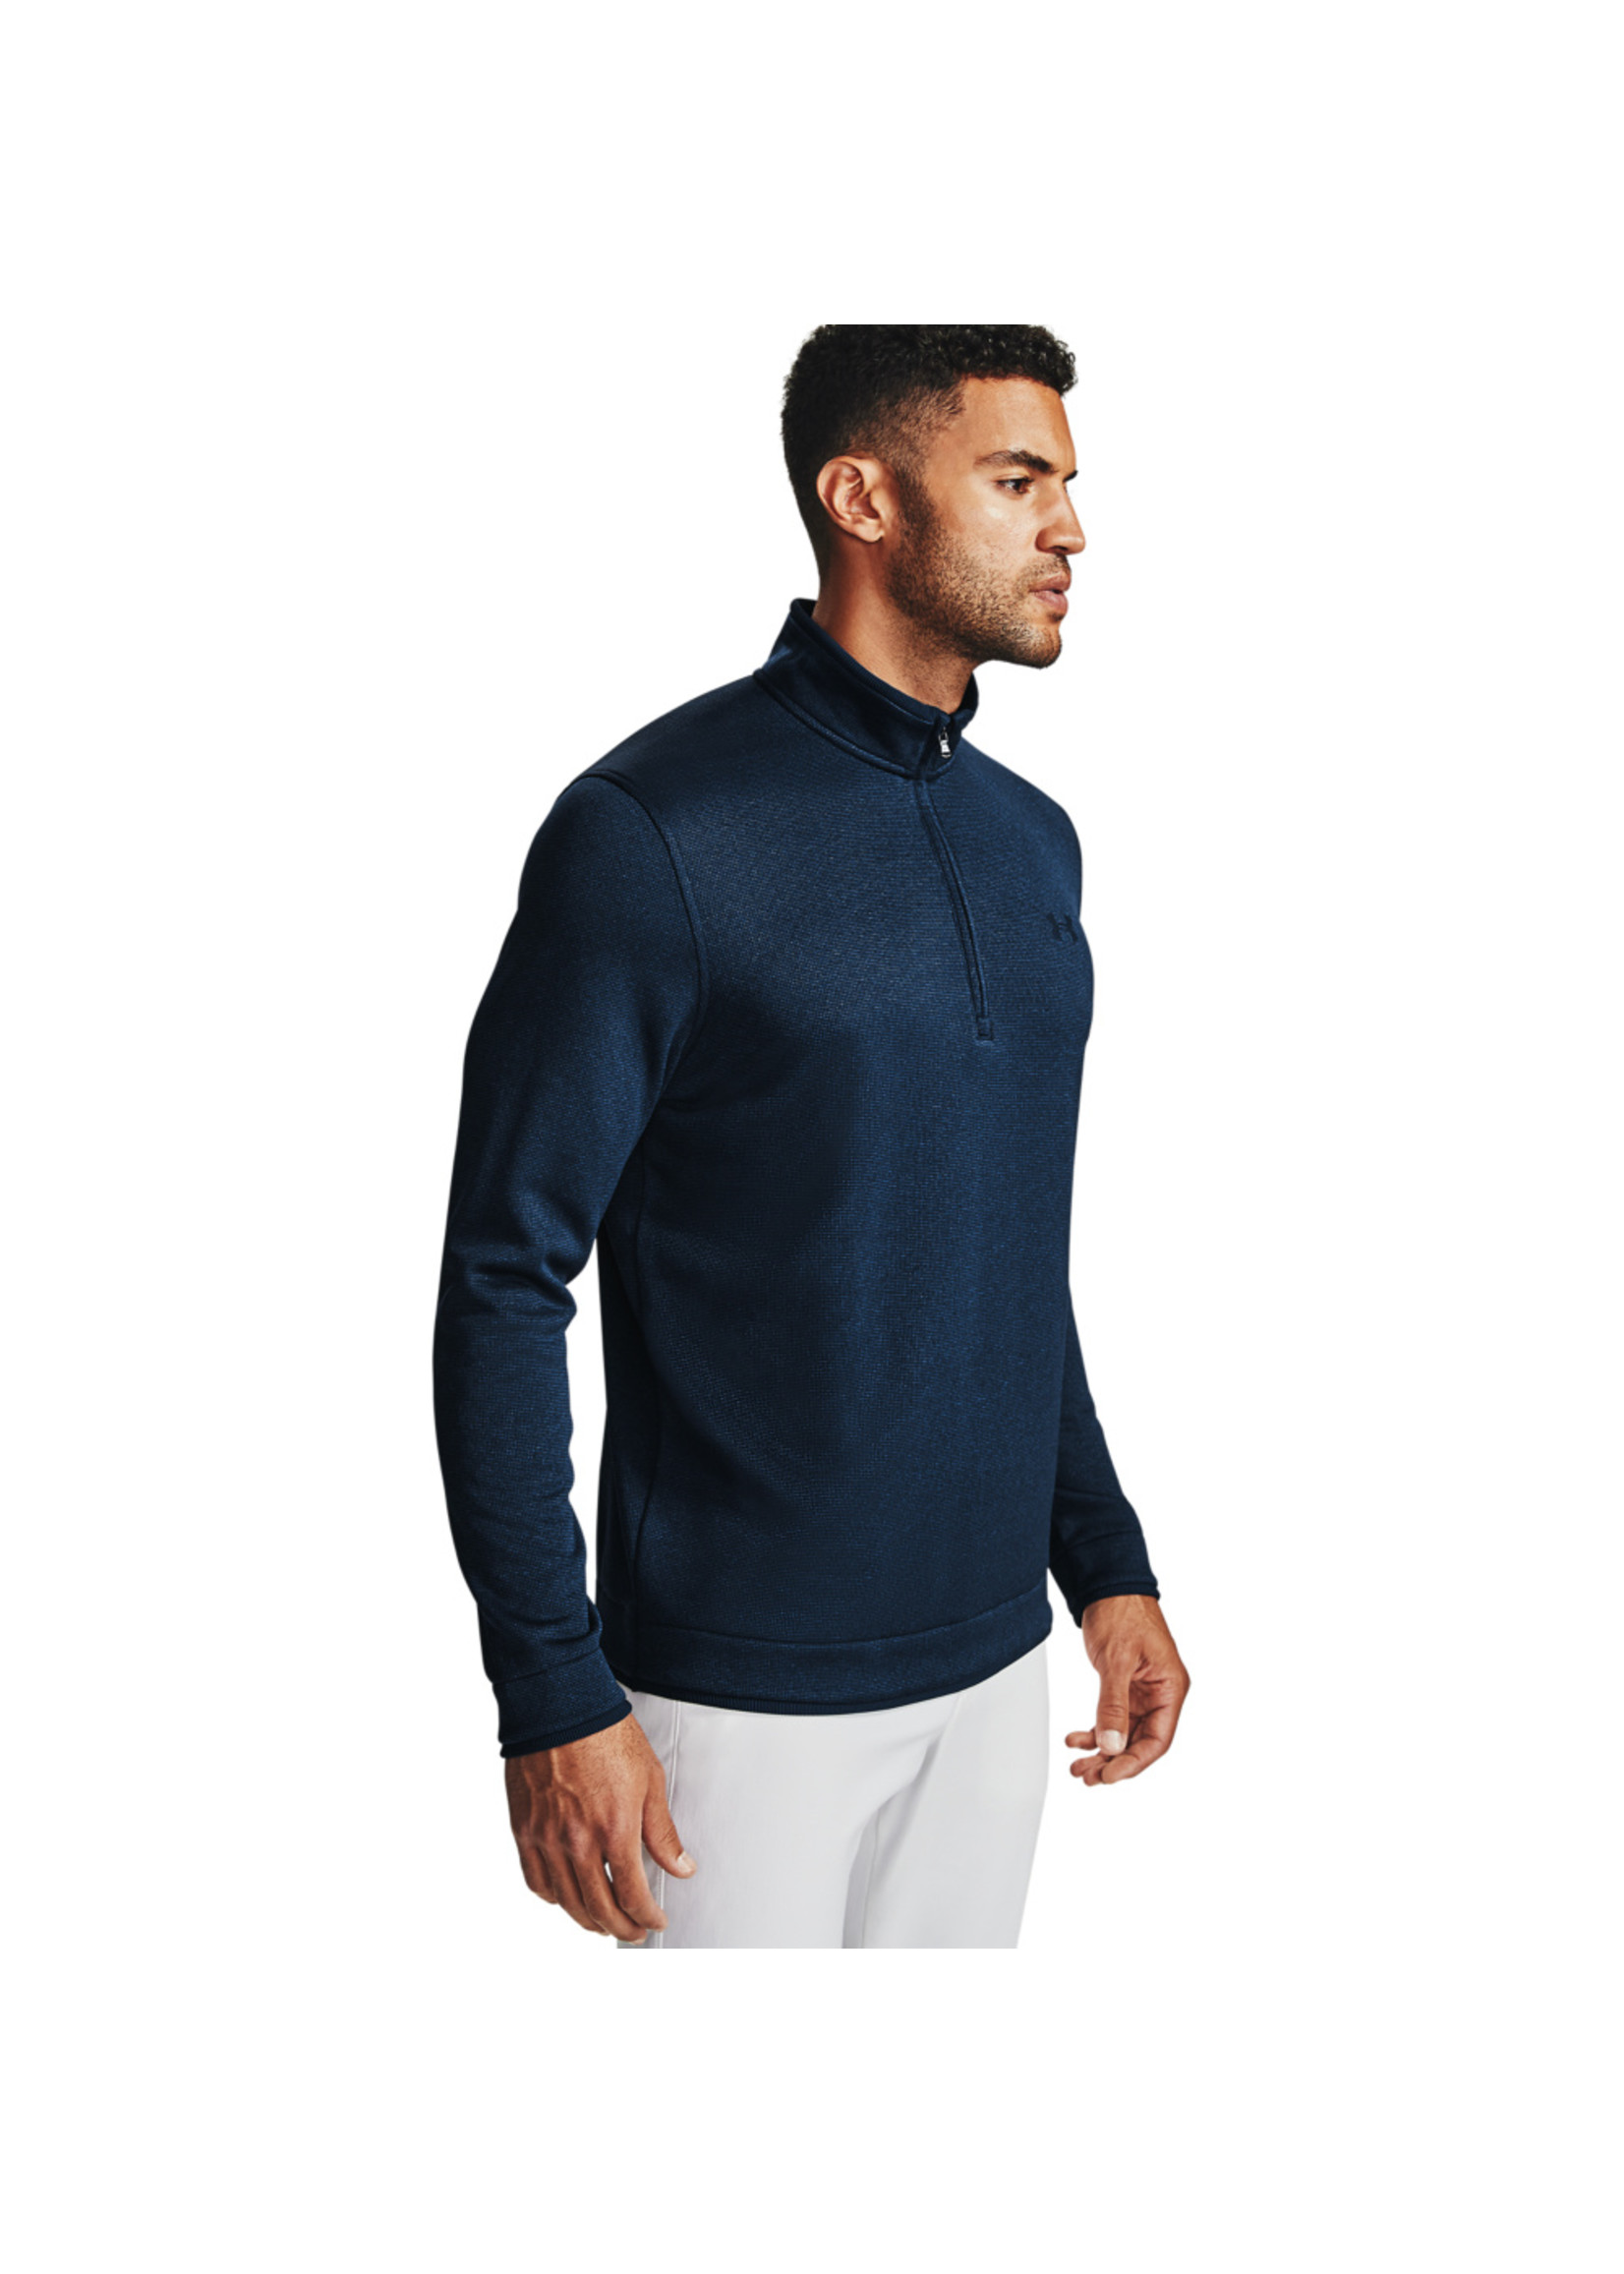 UNDER ARMOUR Men's UA Storm SweaterFleece ½ Zip